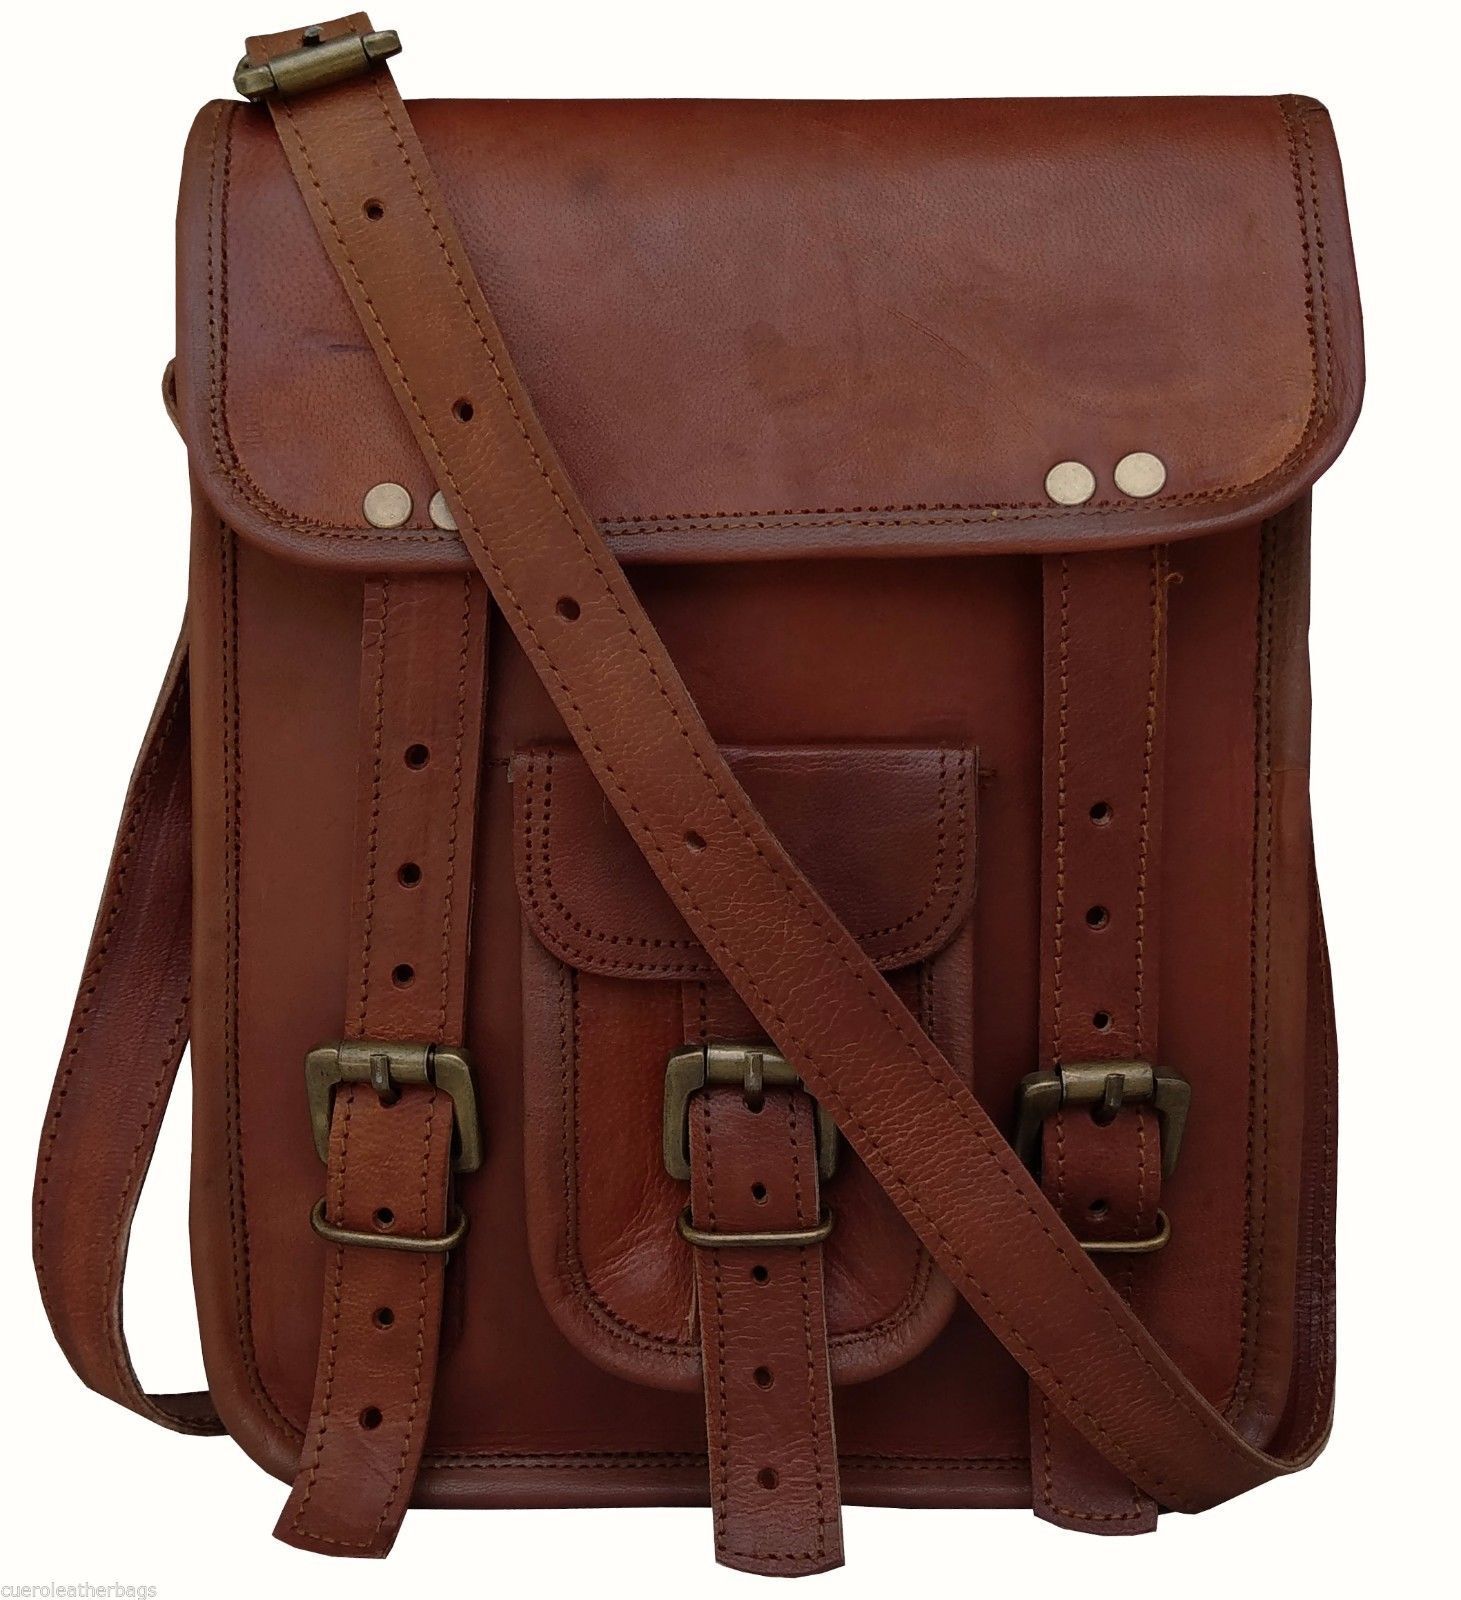 Men's brown messenger Leather satchel Vintage Crossbody Shoulder Bag for i Pad